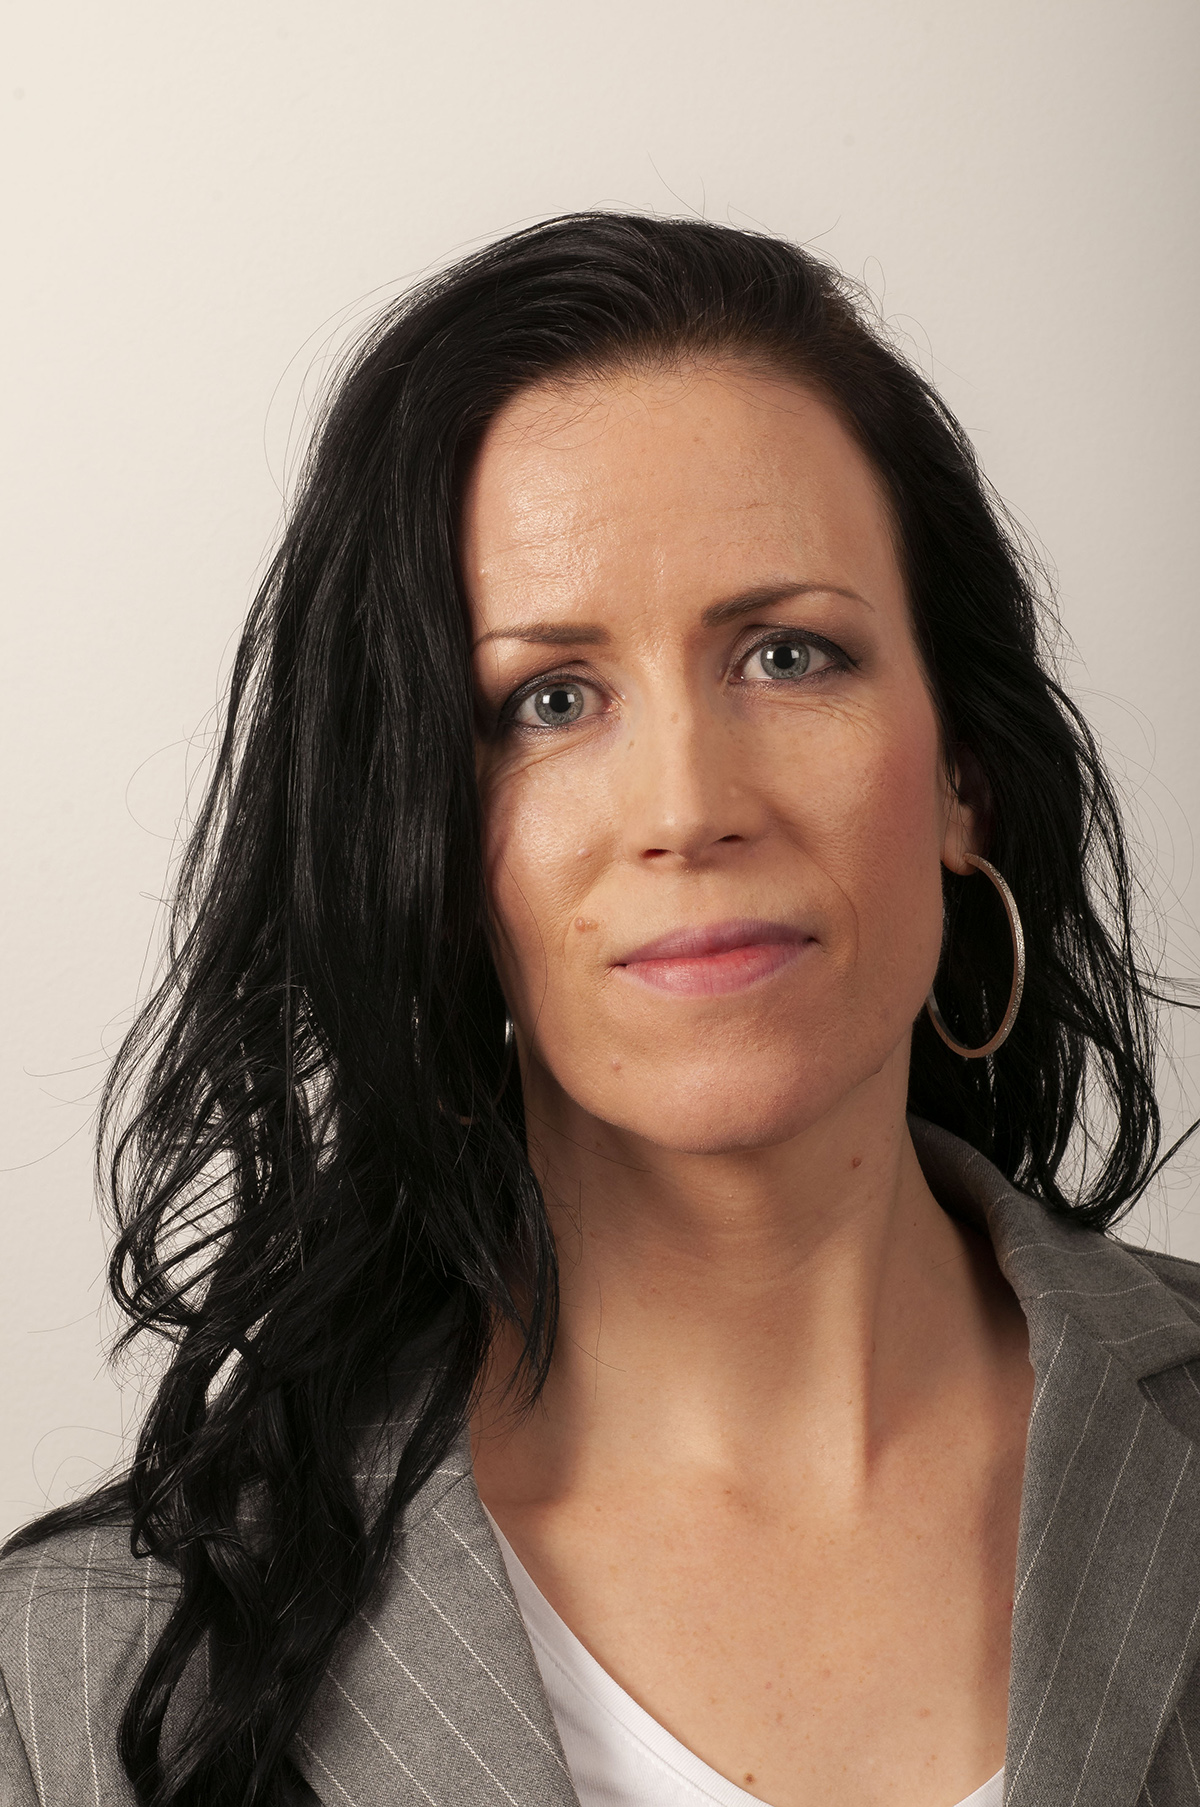 Image of Anette Karin Åbom